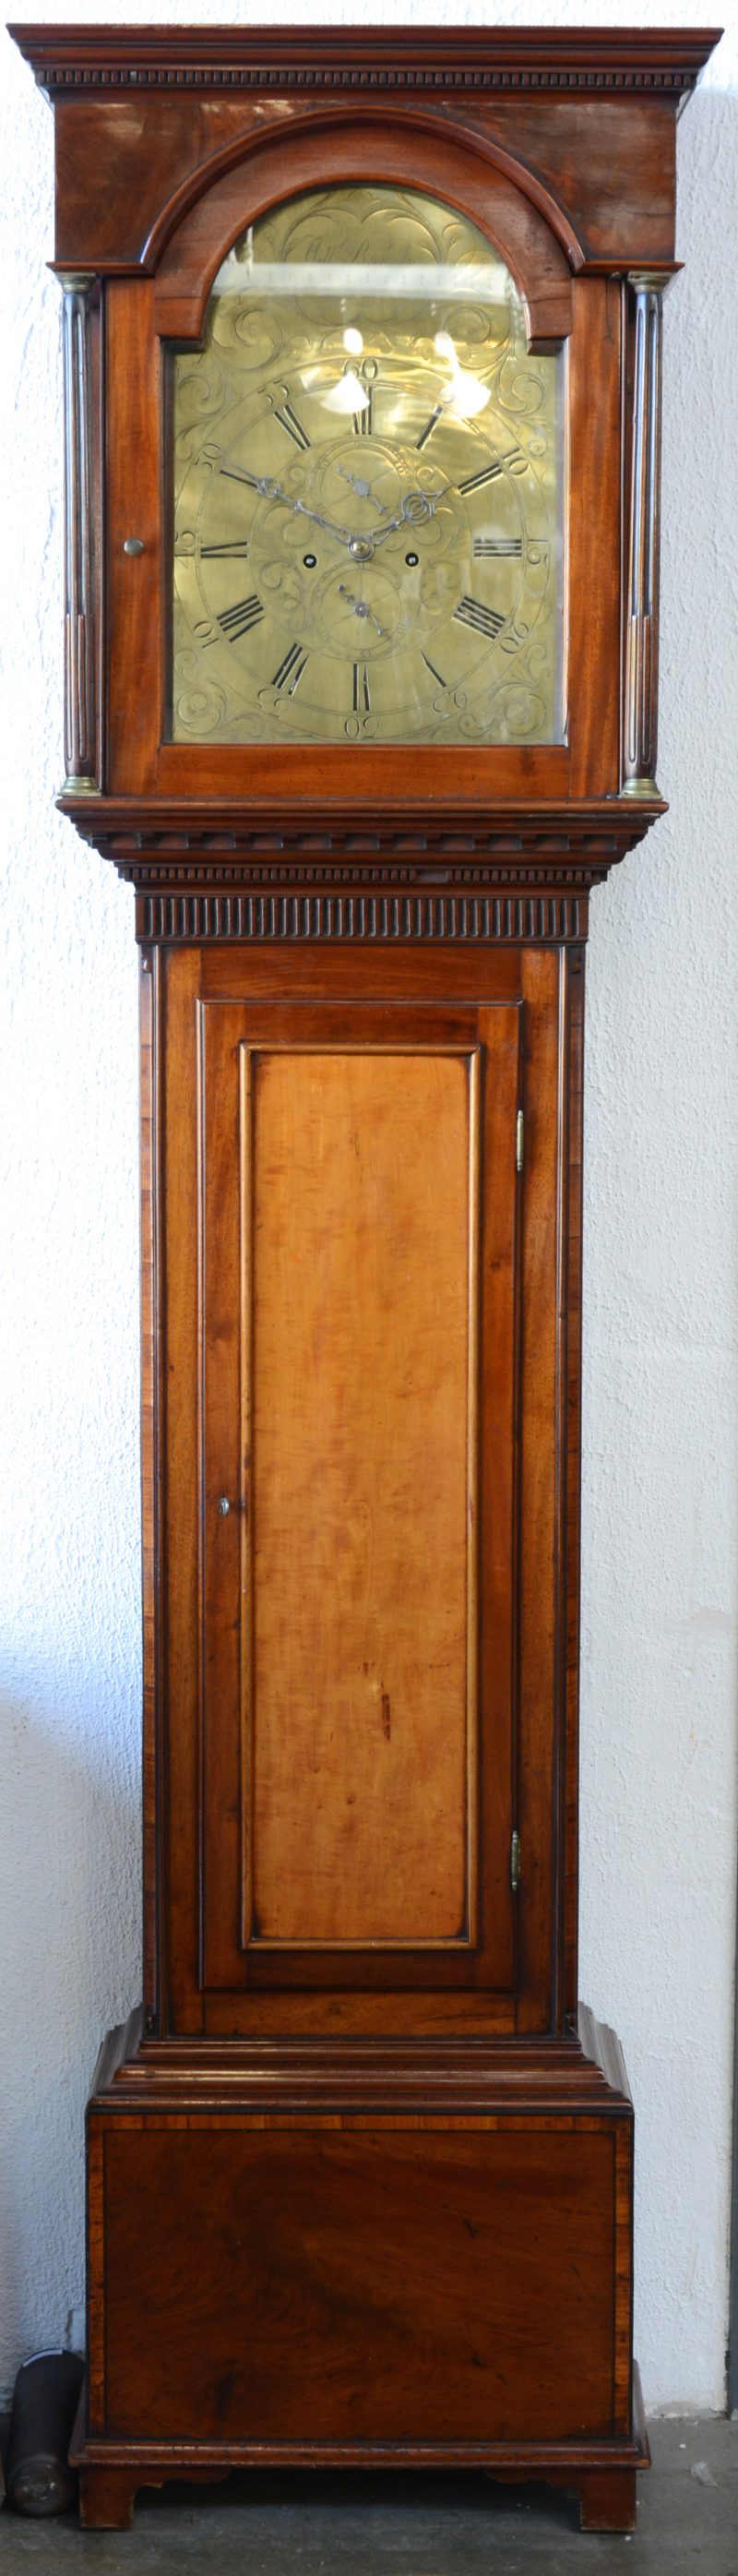 Een Engelse staande klok van mahoniehout met een gedreven messingen wijzerplaat, de kast bovenaan versierd met twee gecanneleerde zuiltjes.